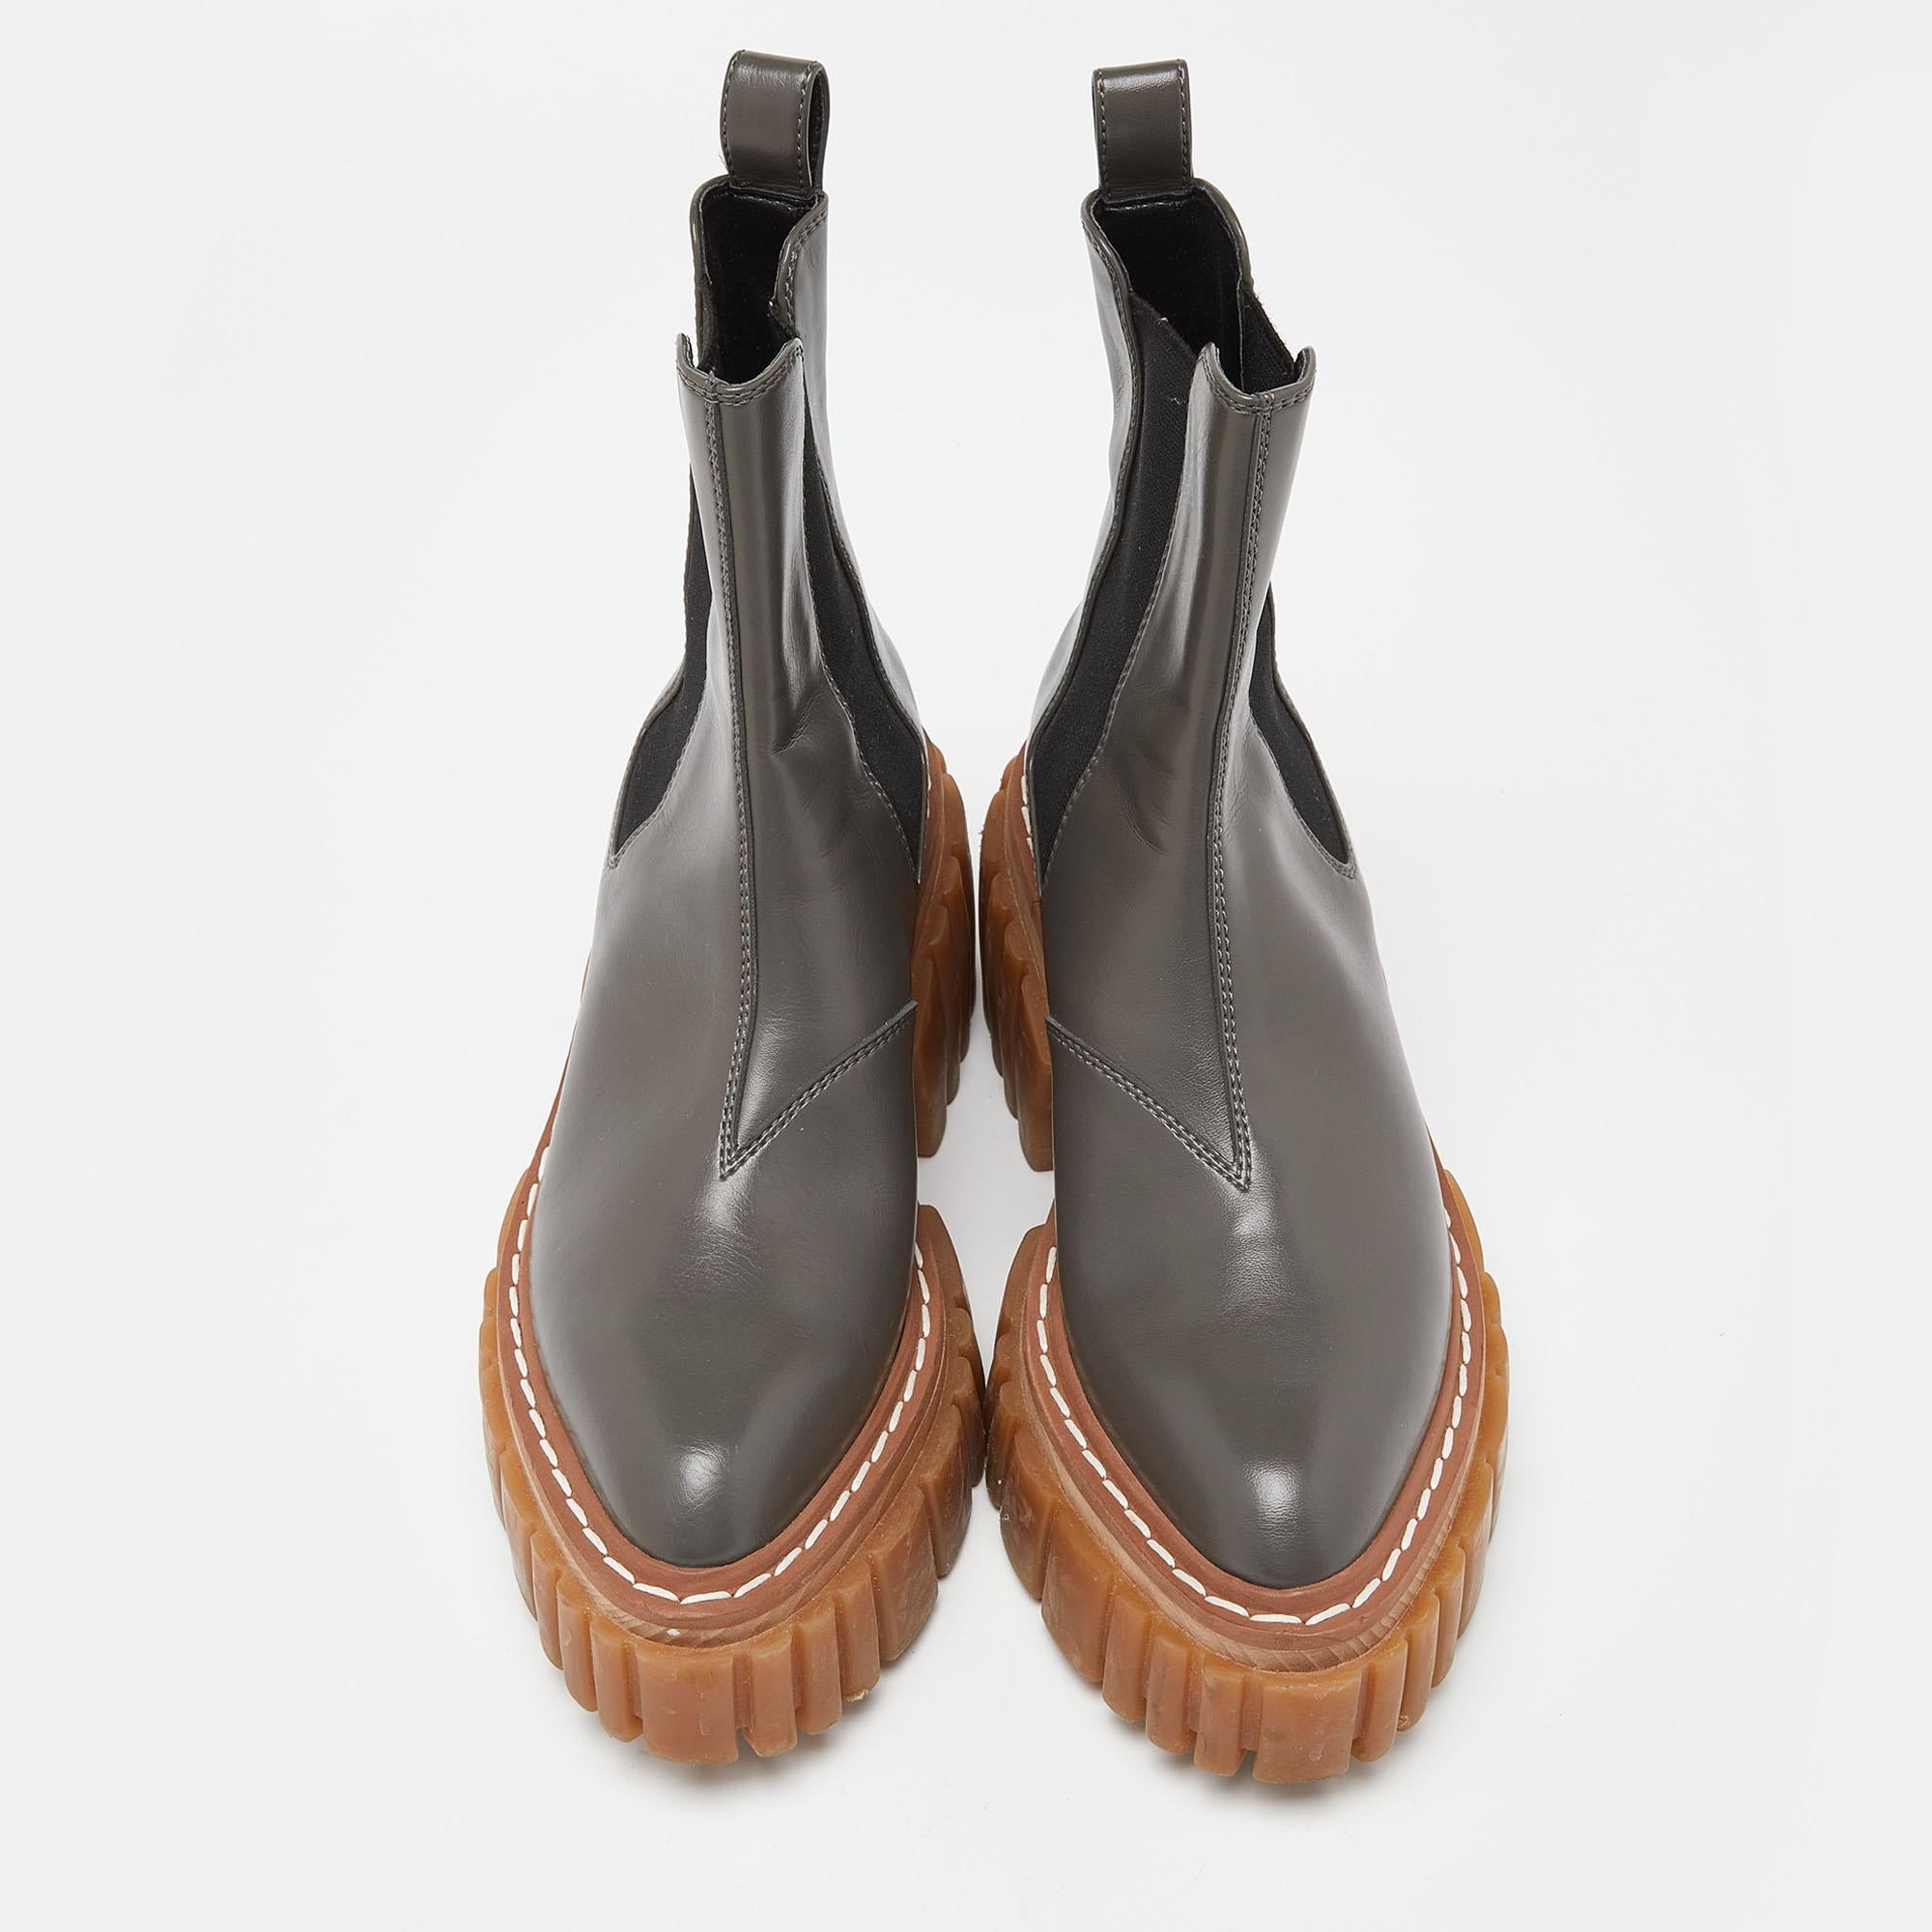 Méticuleusement conçues dans une silhouette élégante, ces bottes ont du style. Elles sont dotées de semelles intérieures confortables et de semelles extérieures durables pour vous durer toute la vie. Ces bottes sont tout simplement incroyables, et